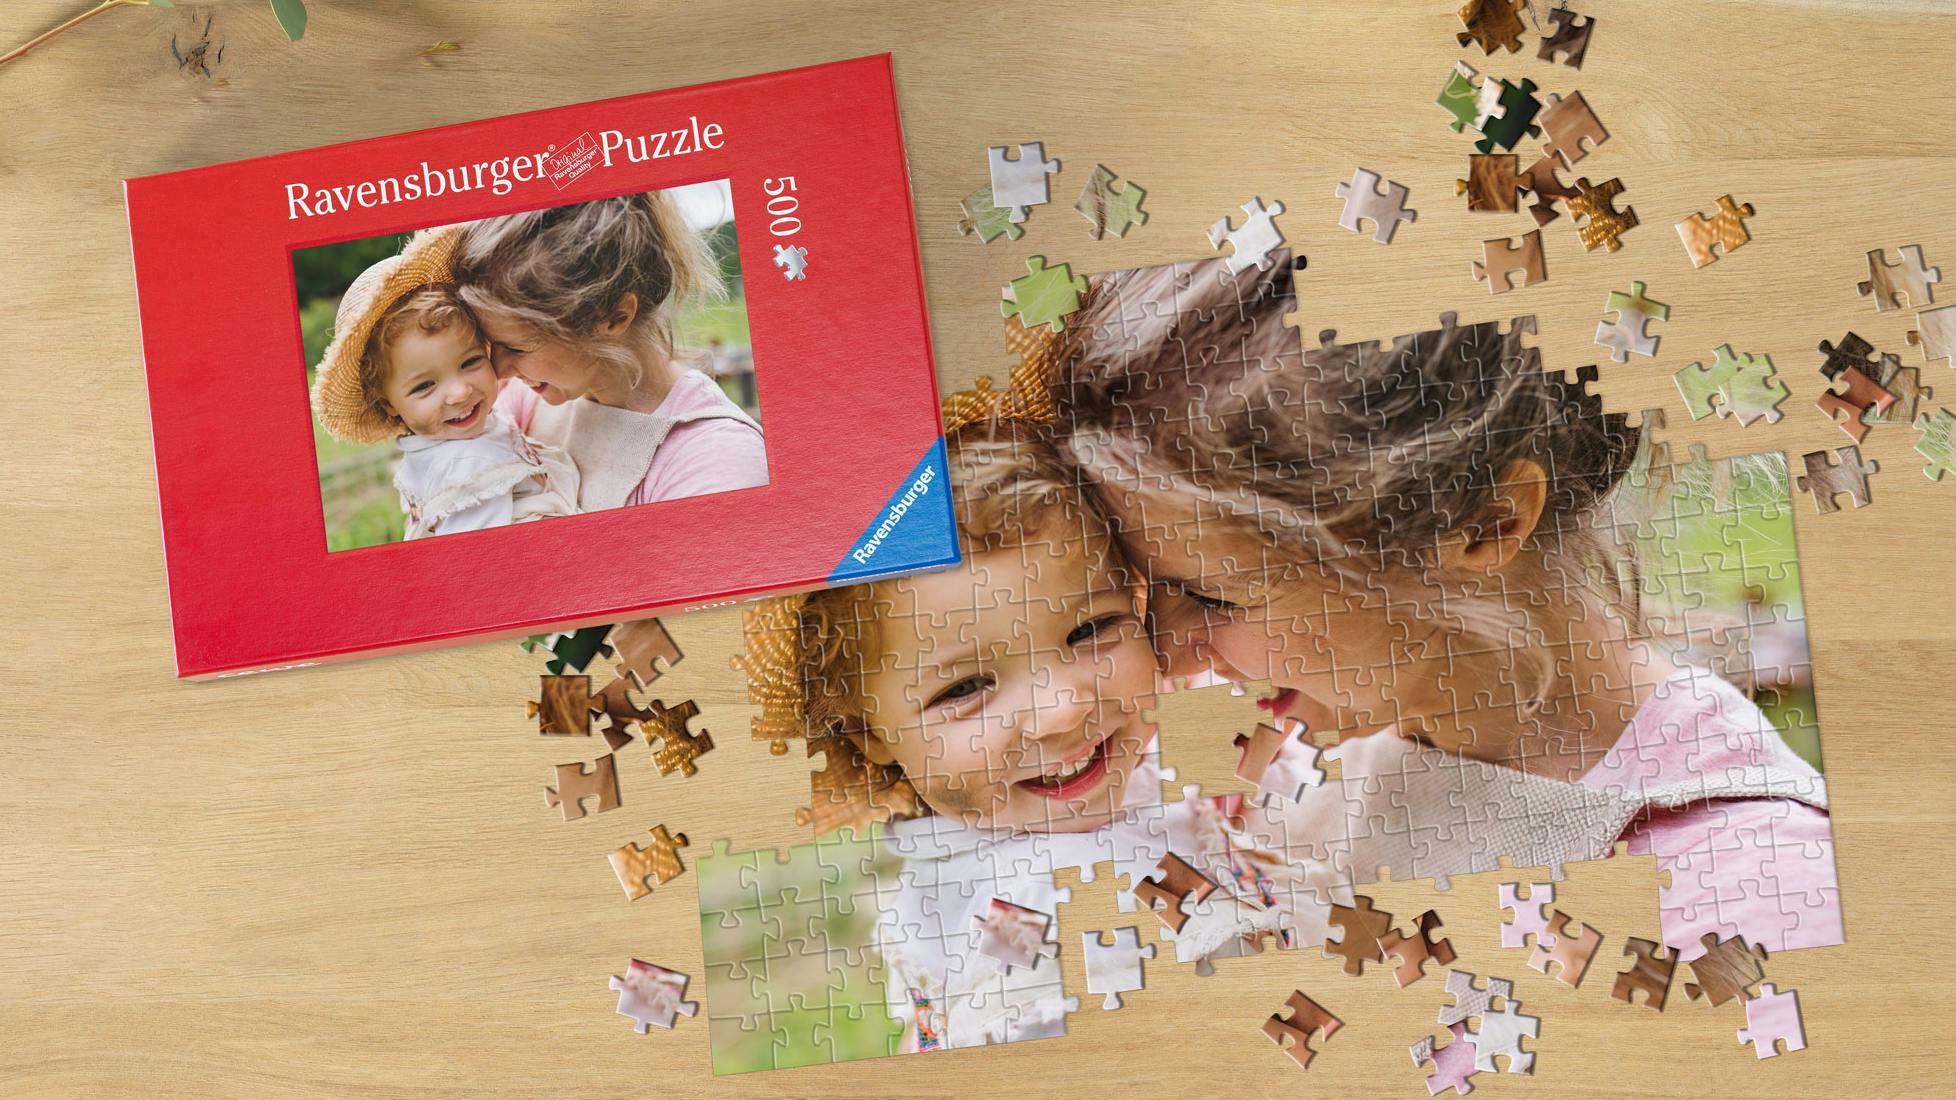 Puzzle photo personnalisé Format (20 x 15 cm), 60 pièces (Pêle-Mêle)